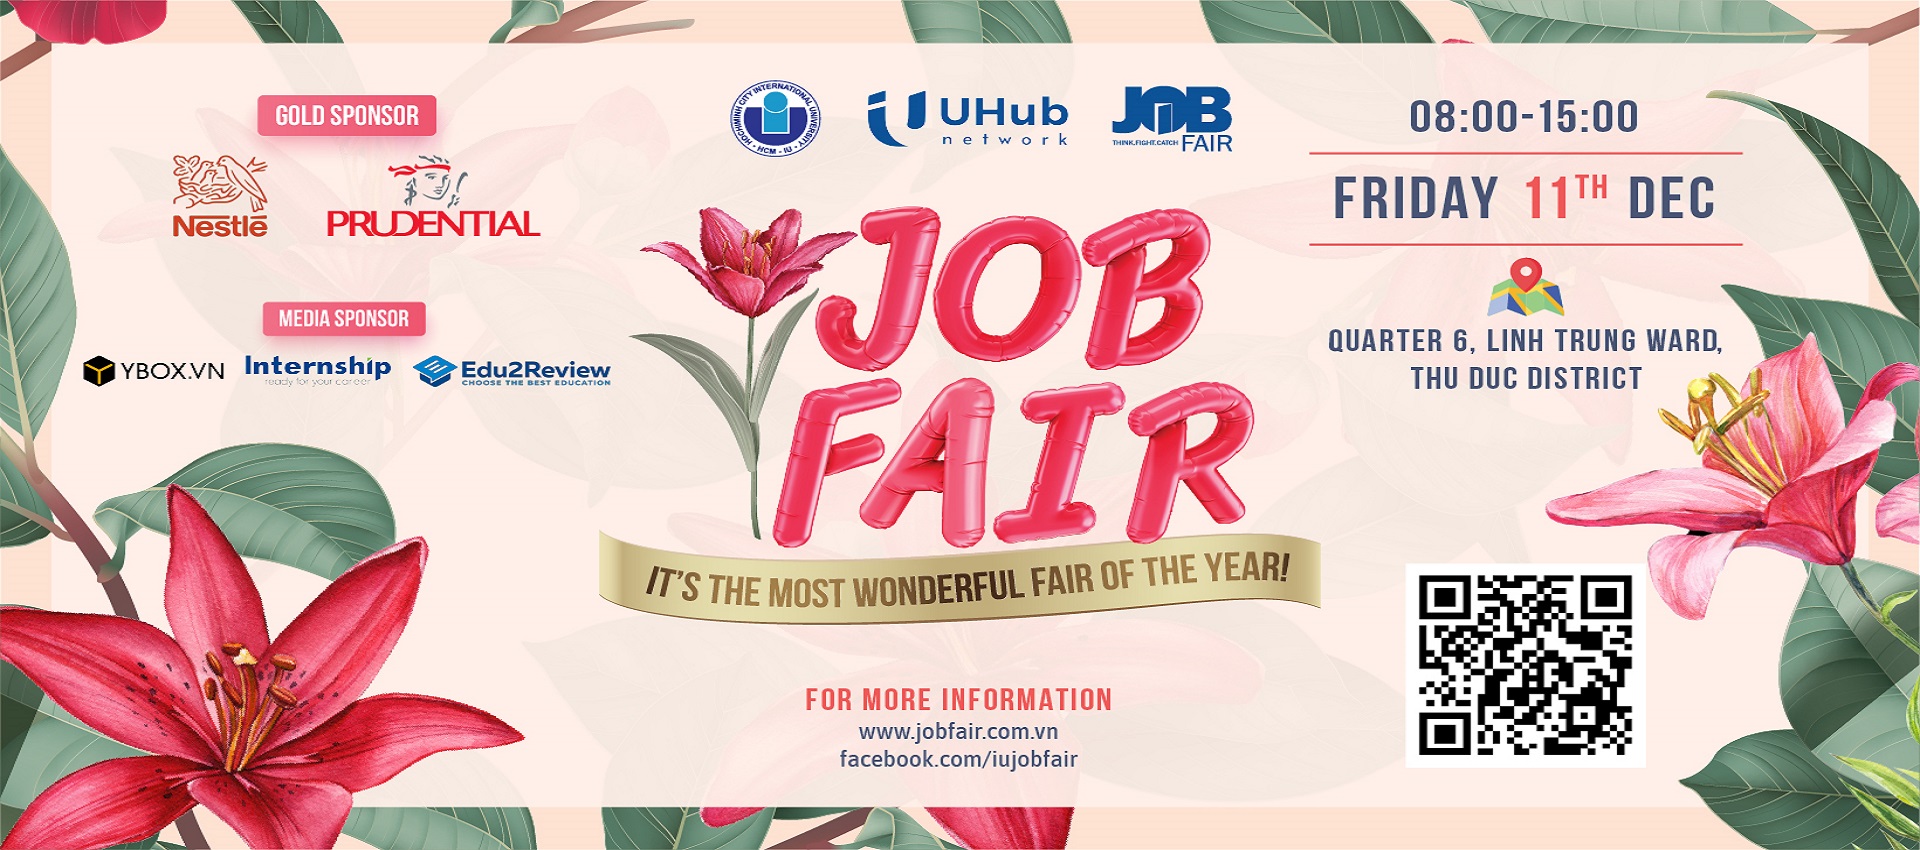 Thư mời sinh viên tham gia ngay chương trình Ngày Hội Việc Làm – Job Fair 2020 Tại Trường Đại Học Quốc Tế – ĐHQG HCM vào ngày 11/12/2020 (Thứ Sáu)